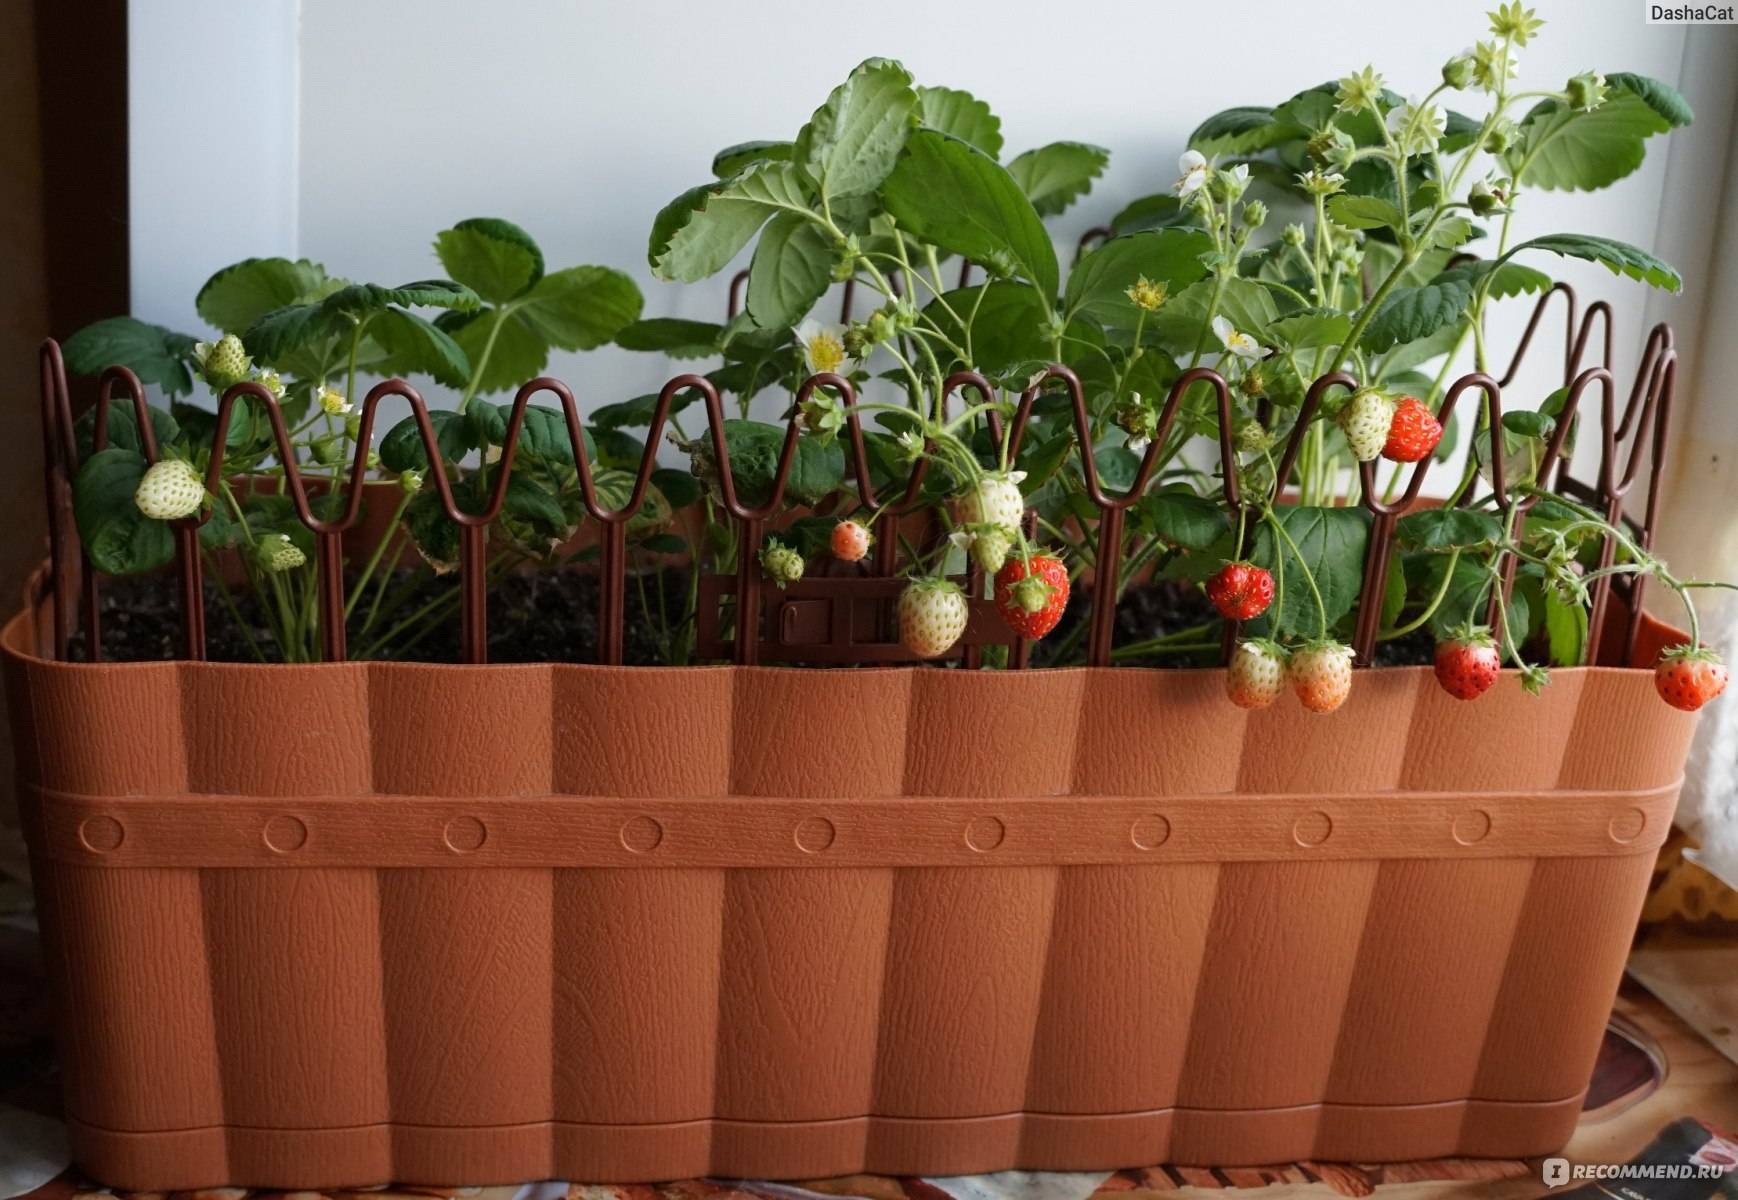 Выращивание клубники дома на подоконнике круглый год пошагово с видео